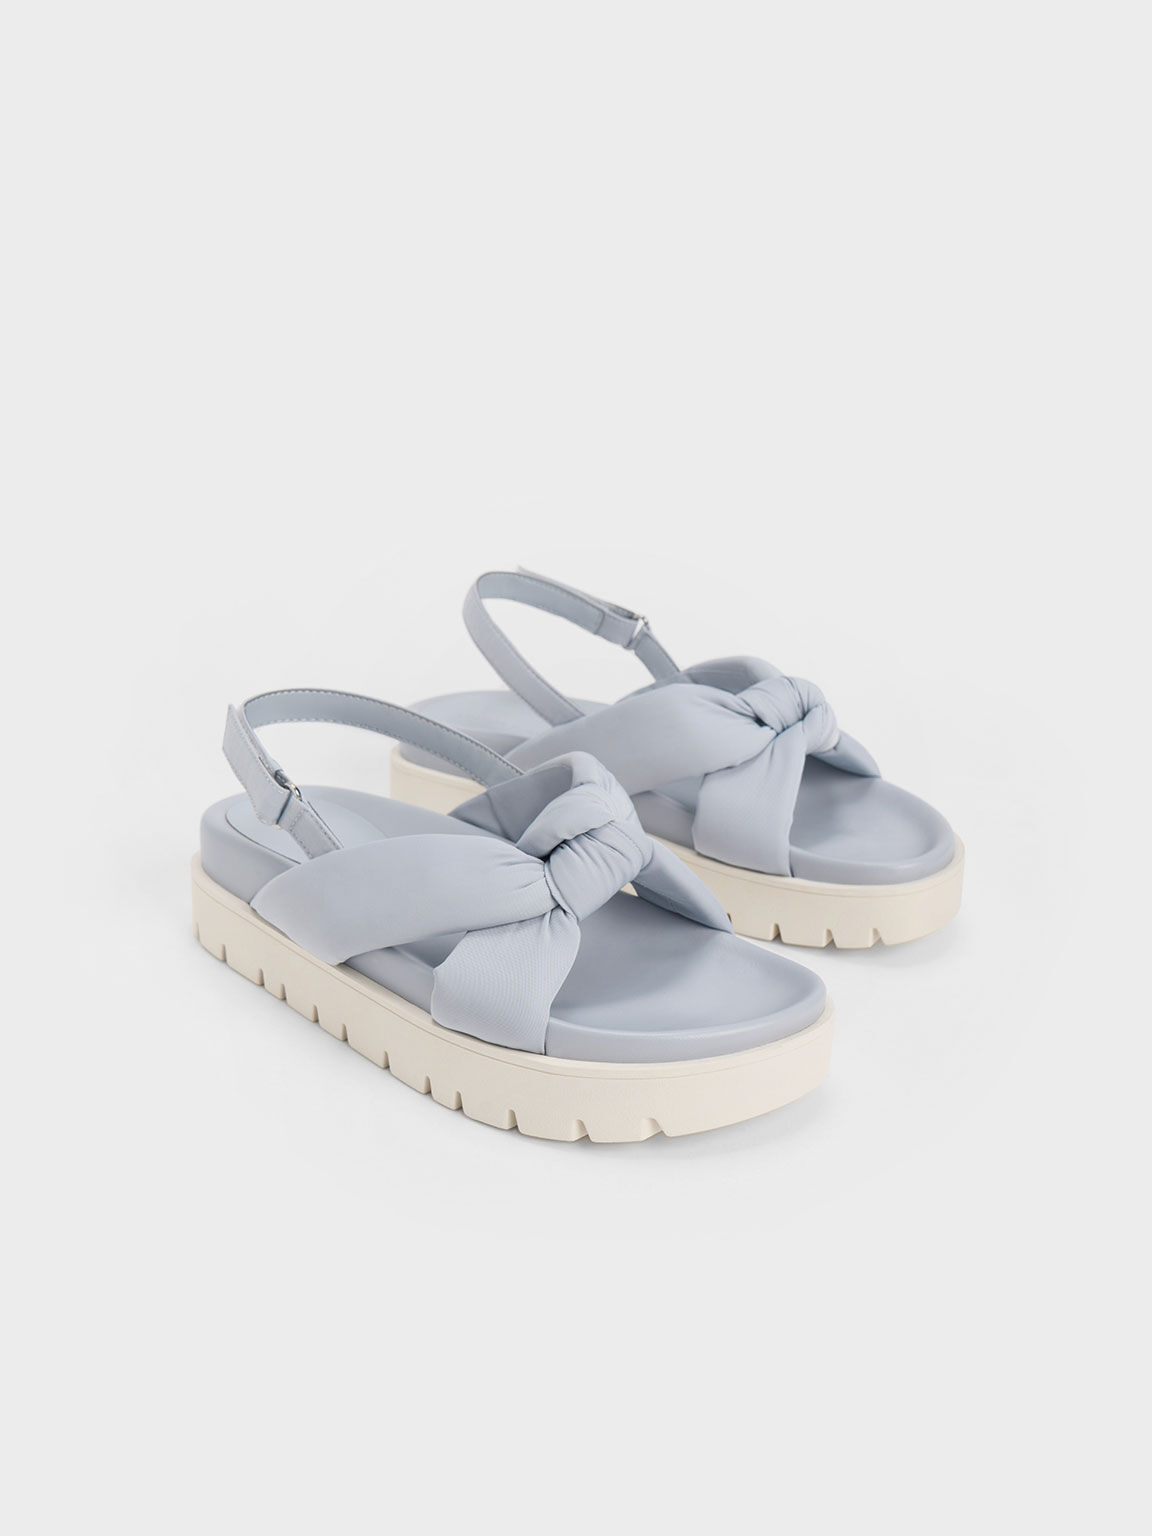 Nylon Knotted Flatform Sandals, Light Blue, hi-res